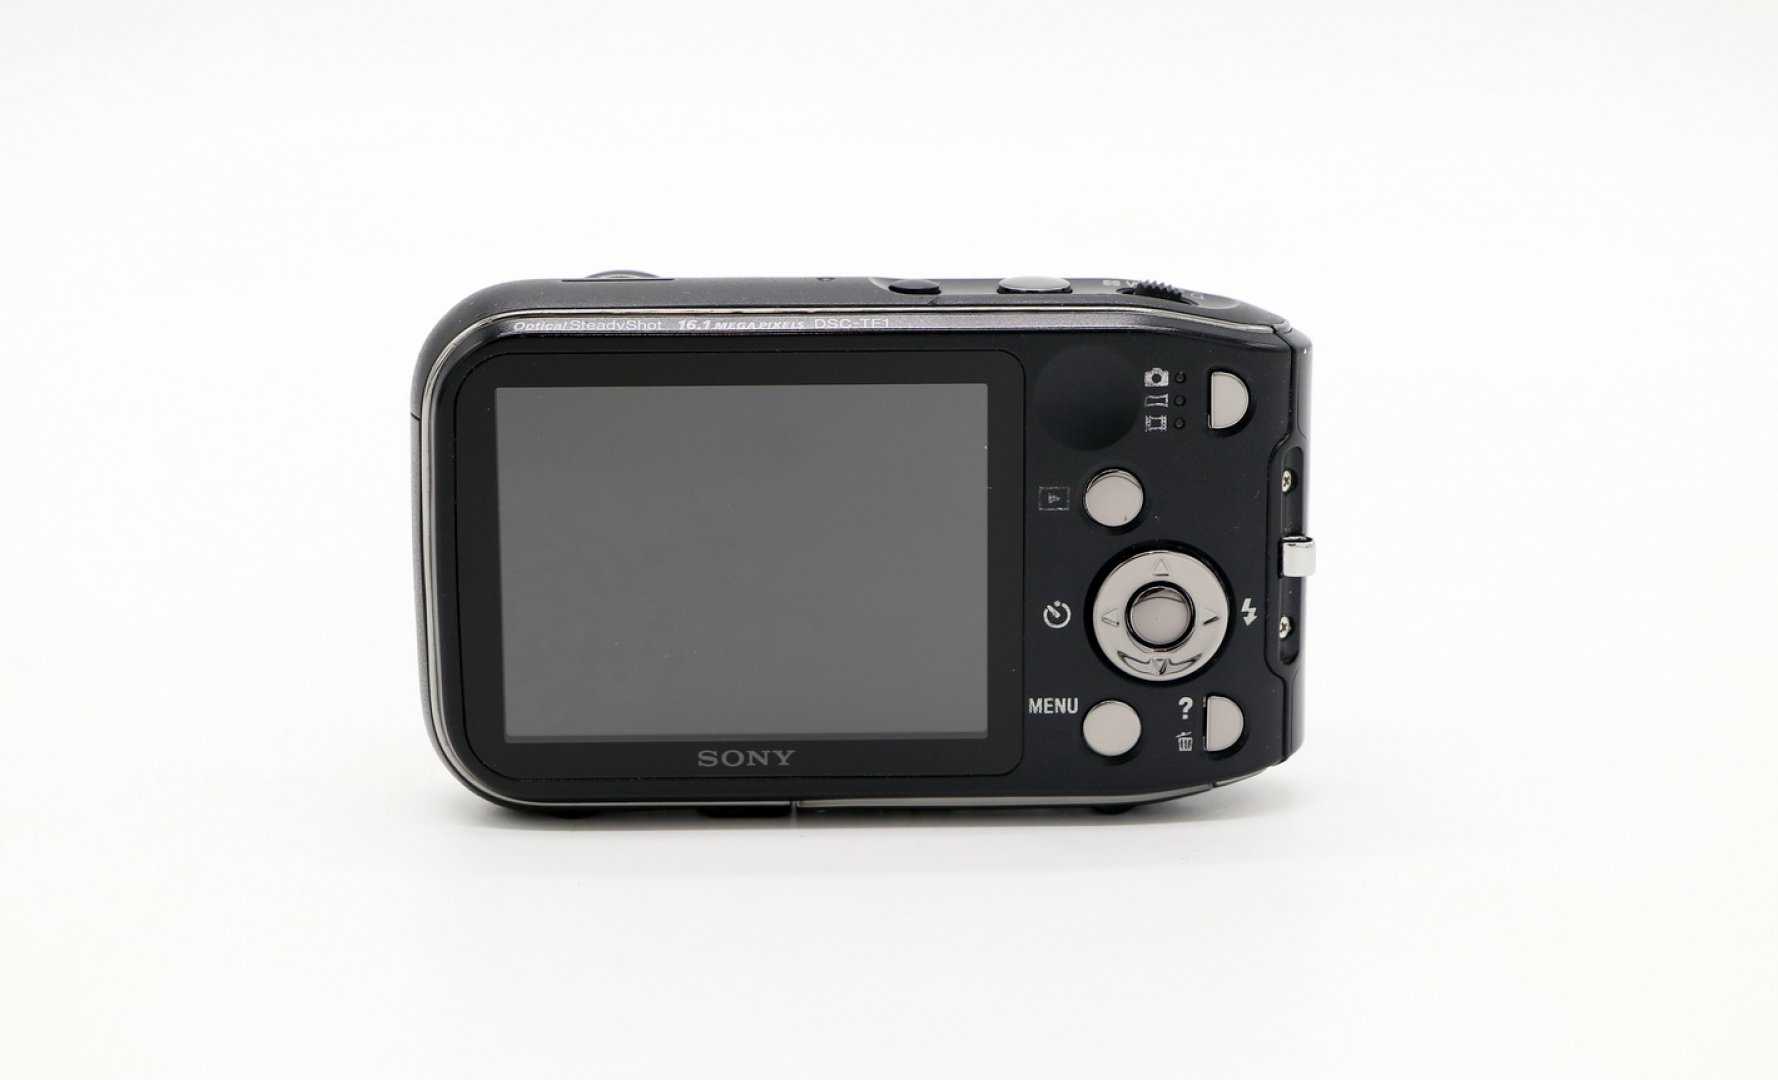 Фотоаппарат sony cyber-shot dsc-r1 — купить, цена и характеристики, отзывы